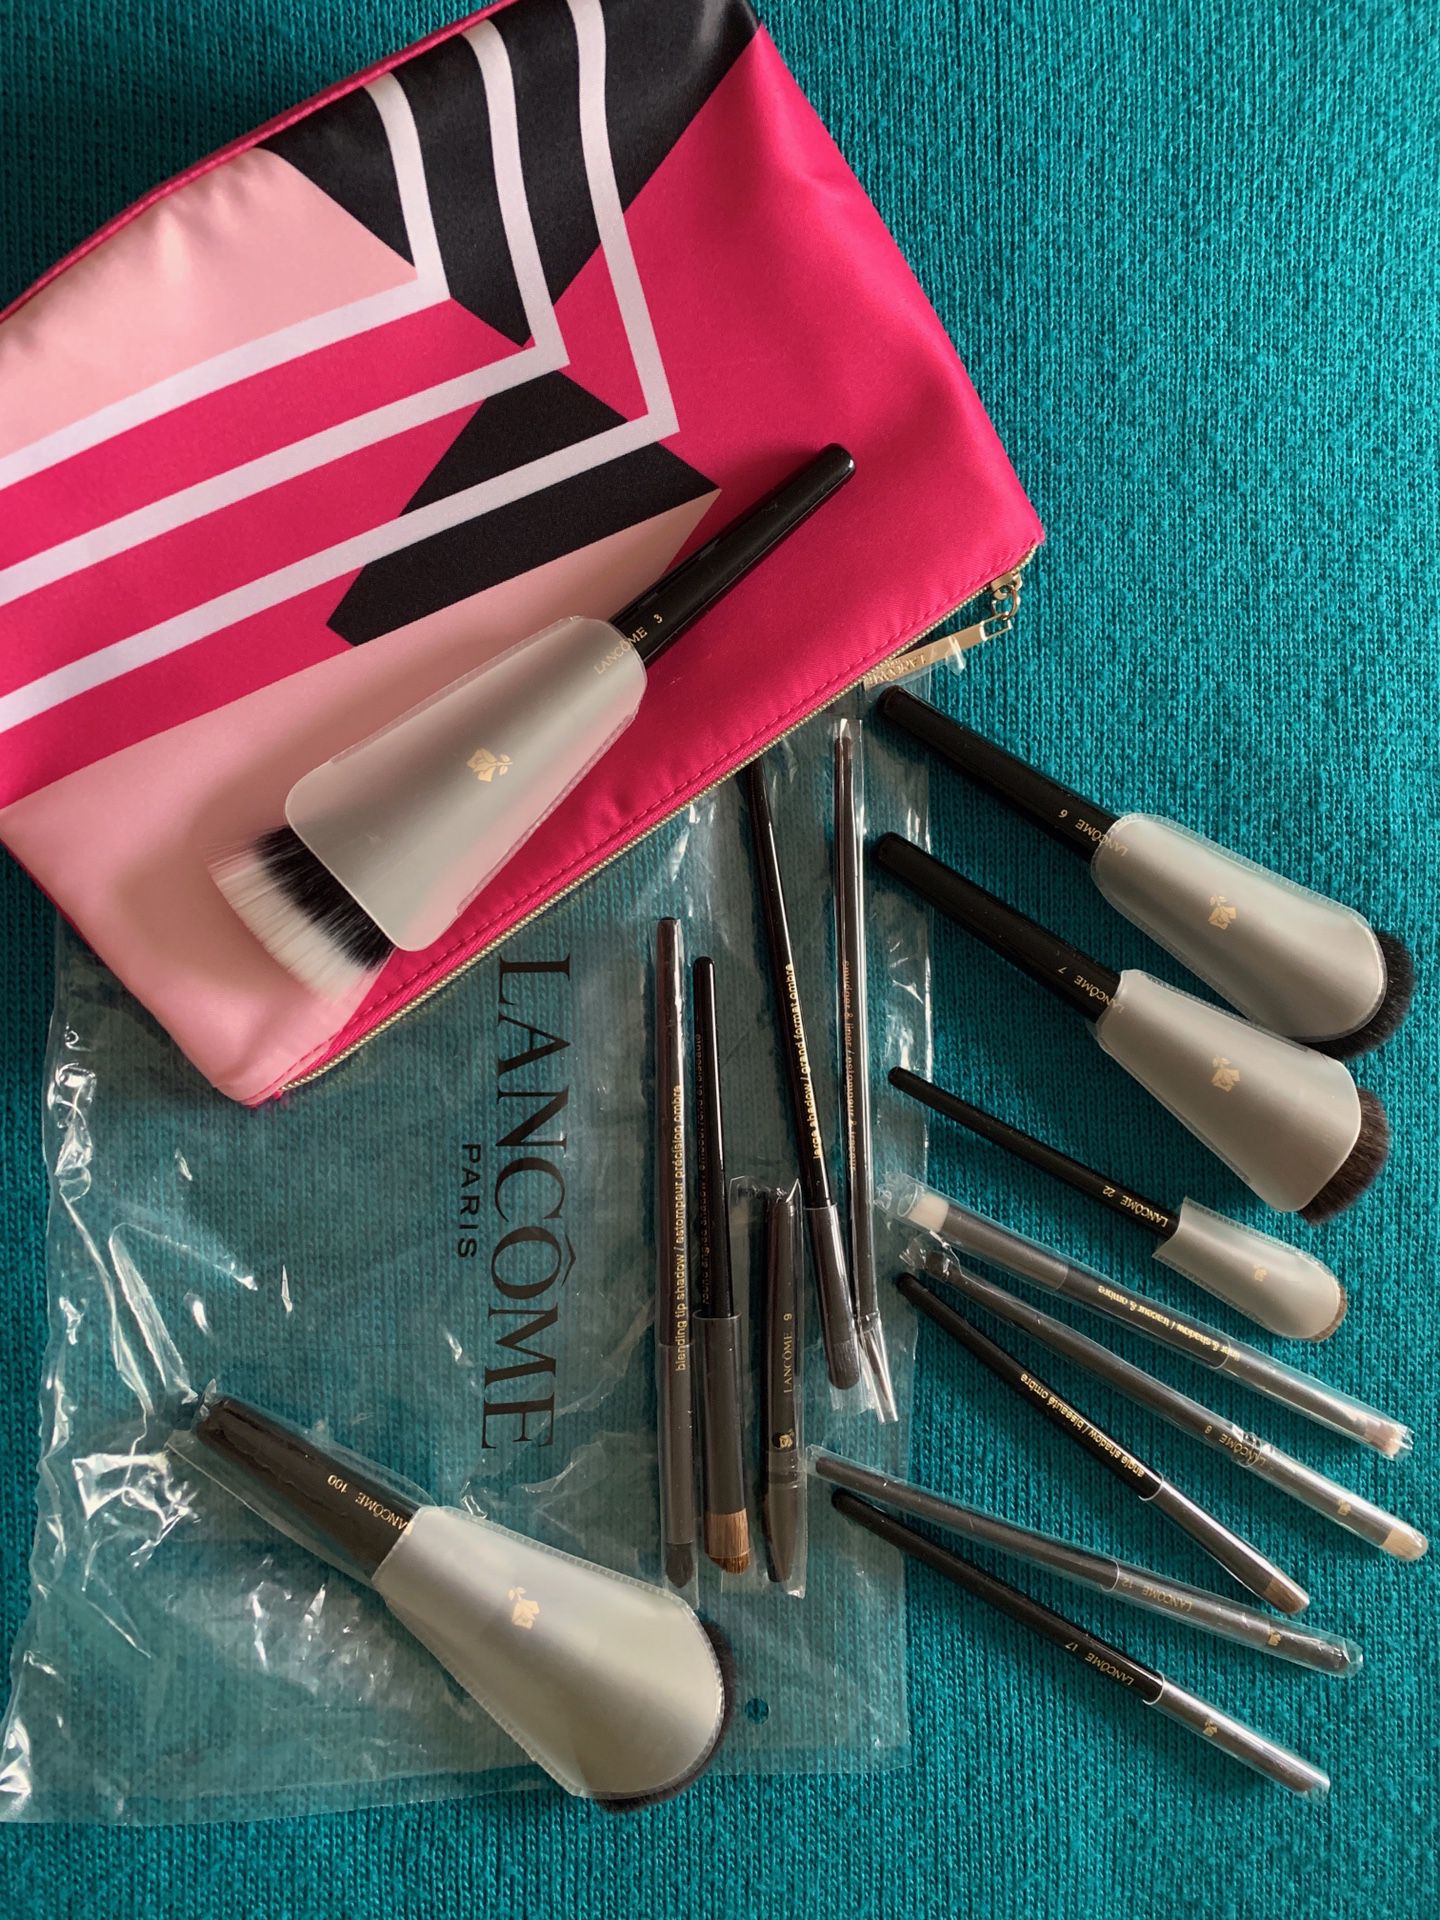 Lancome brush set with makeup bag